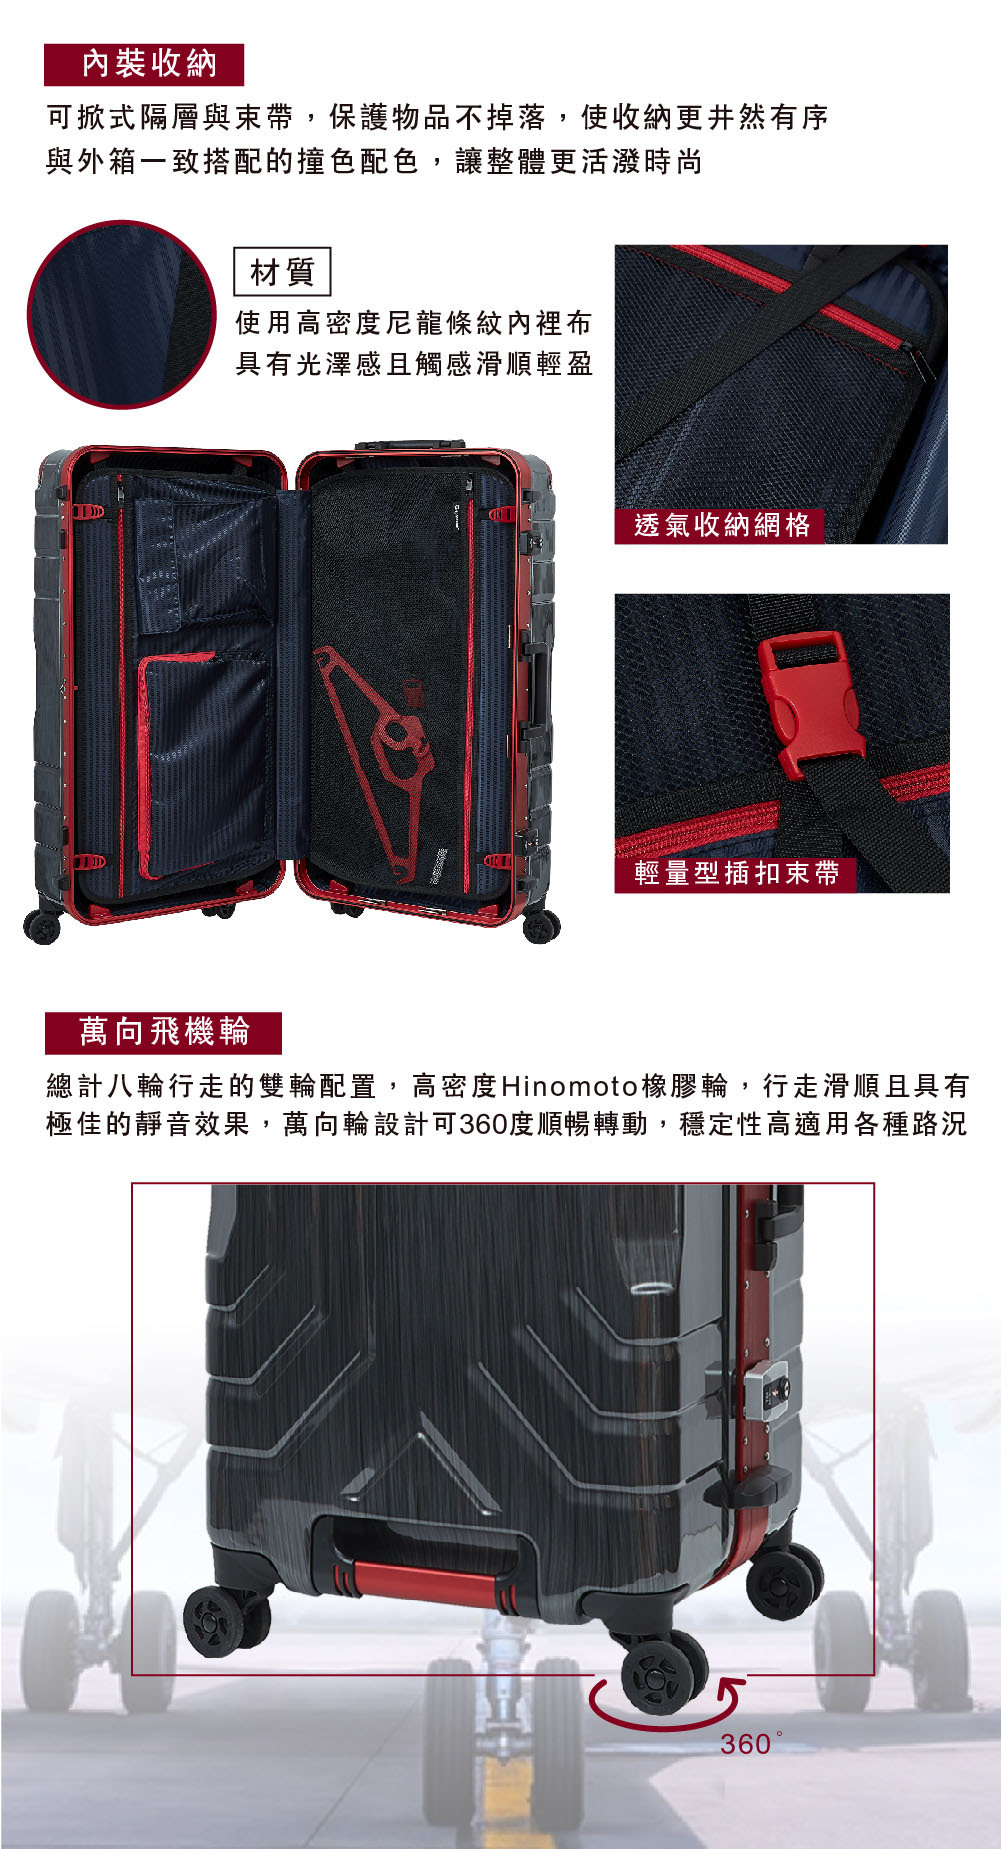 GripMaster-luggage-GM5225-74-27-P8.jpg